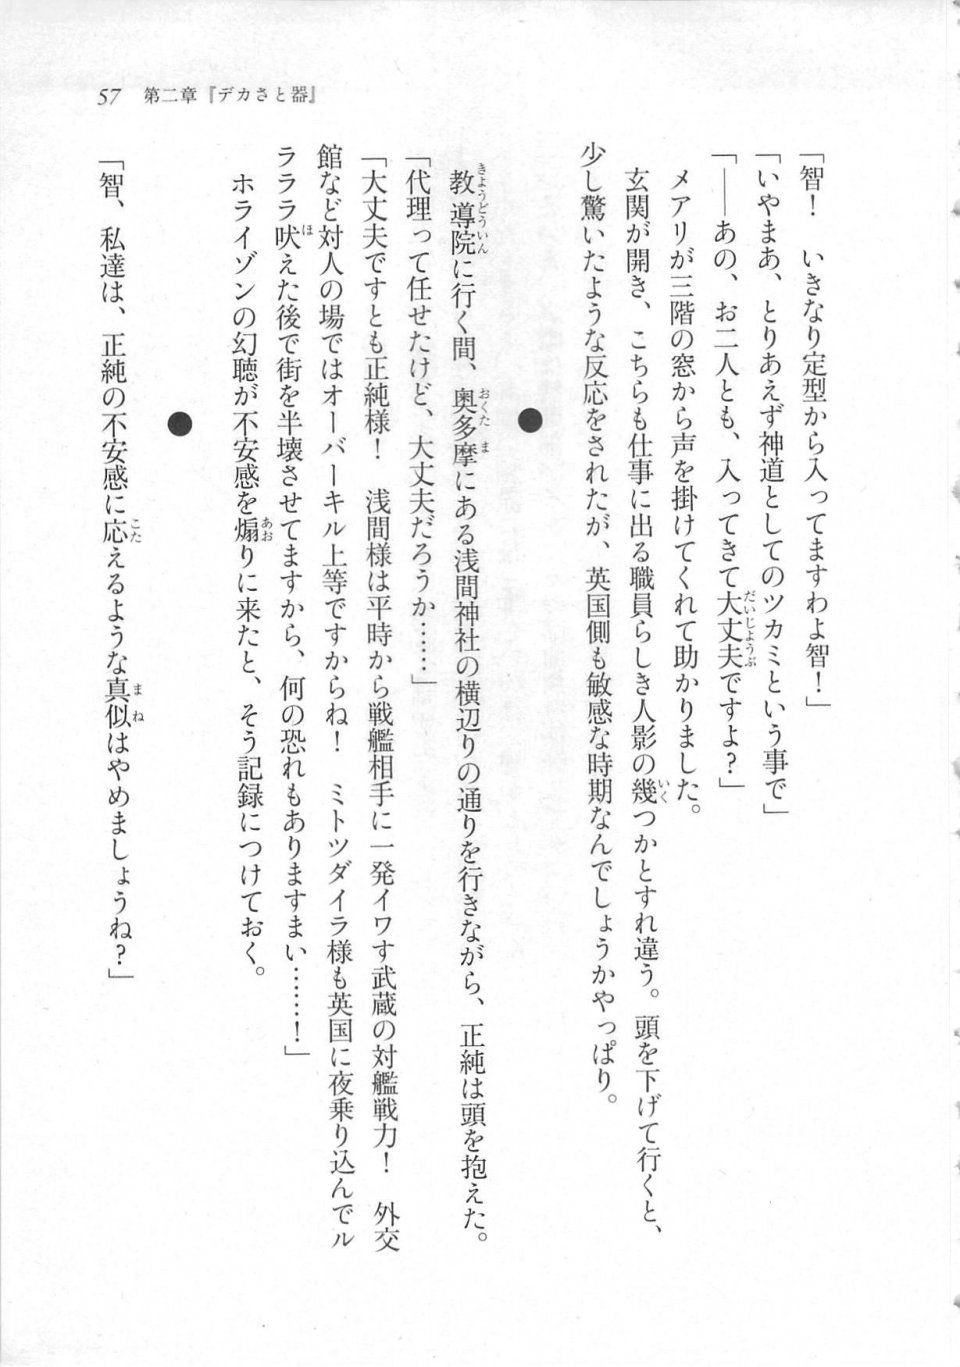 Kyoukai Senjou no Horizon LN Sidestory Vol 3 - Photo #61